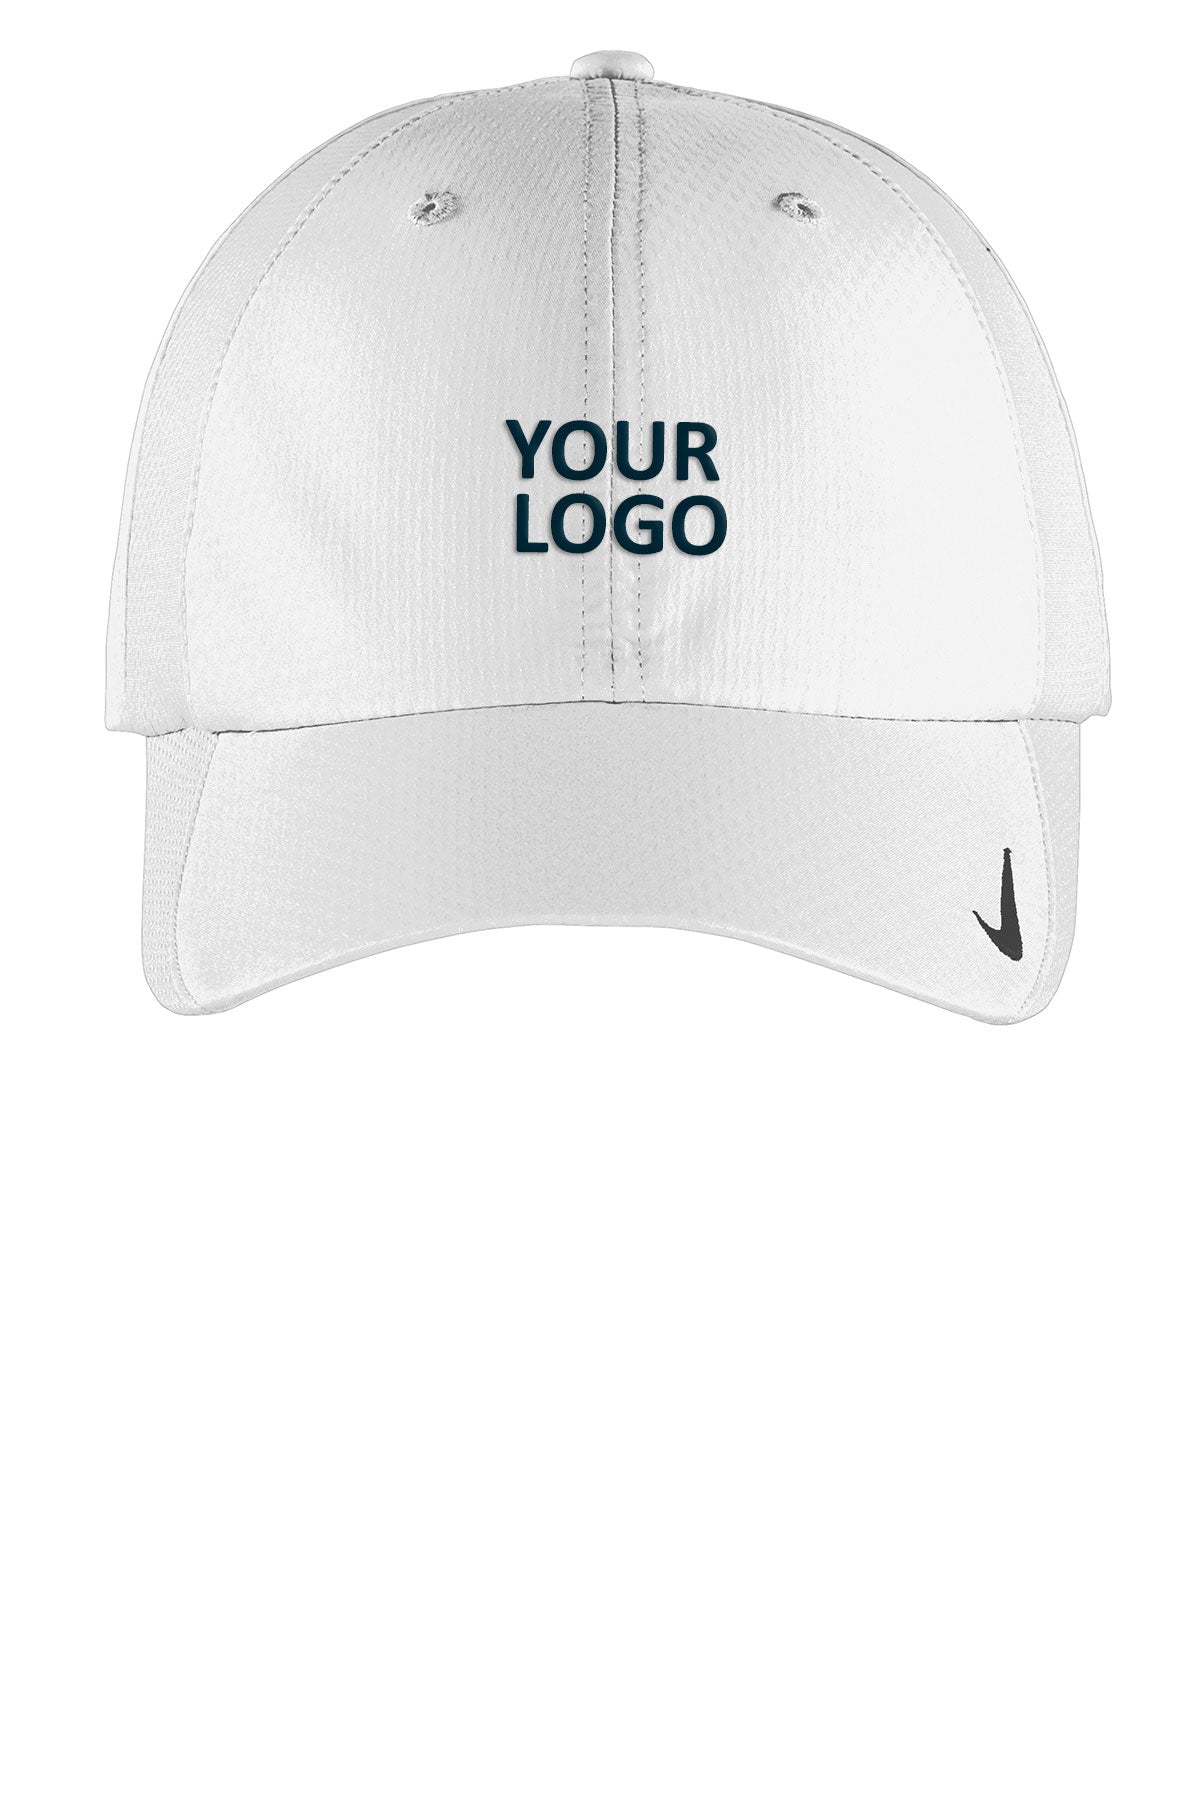 Custom Nike Sphere Dry Cap White